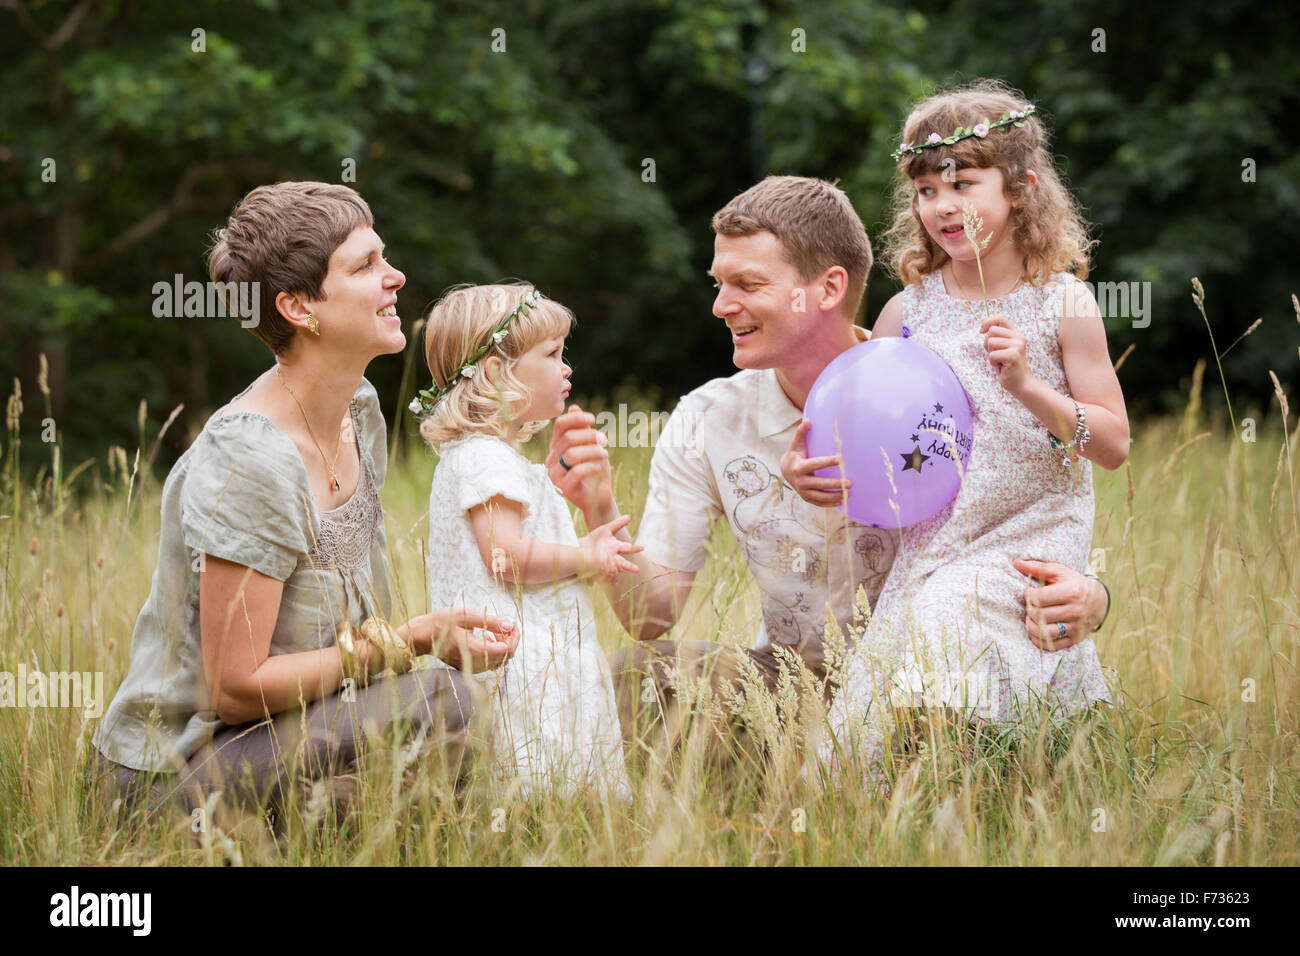 Familia con dos niños jugando en un prado. Foto de stock